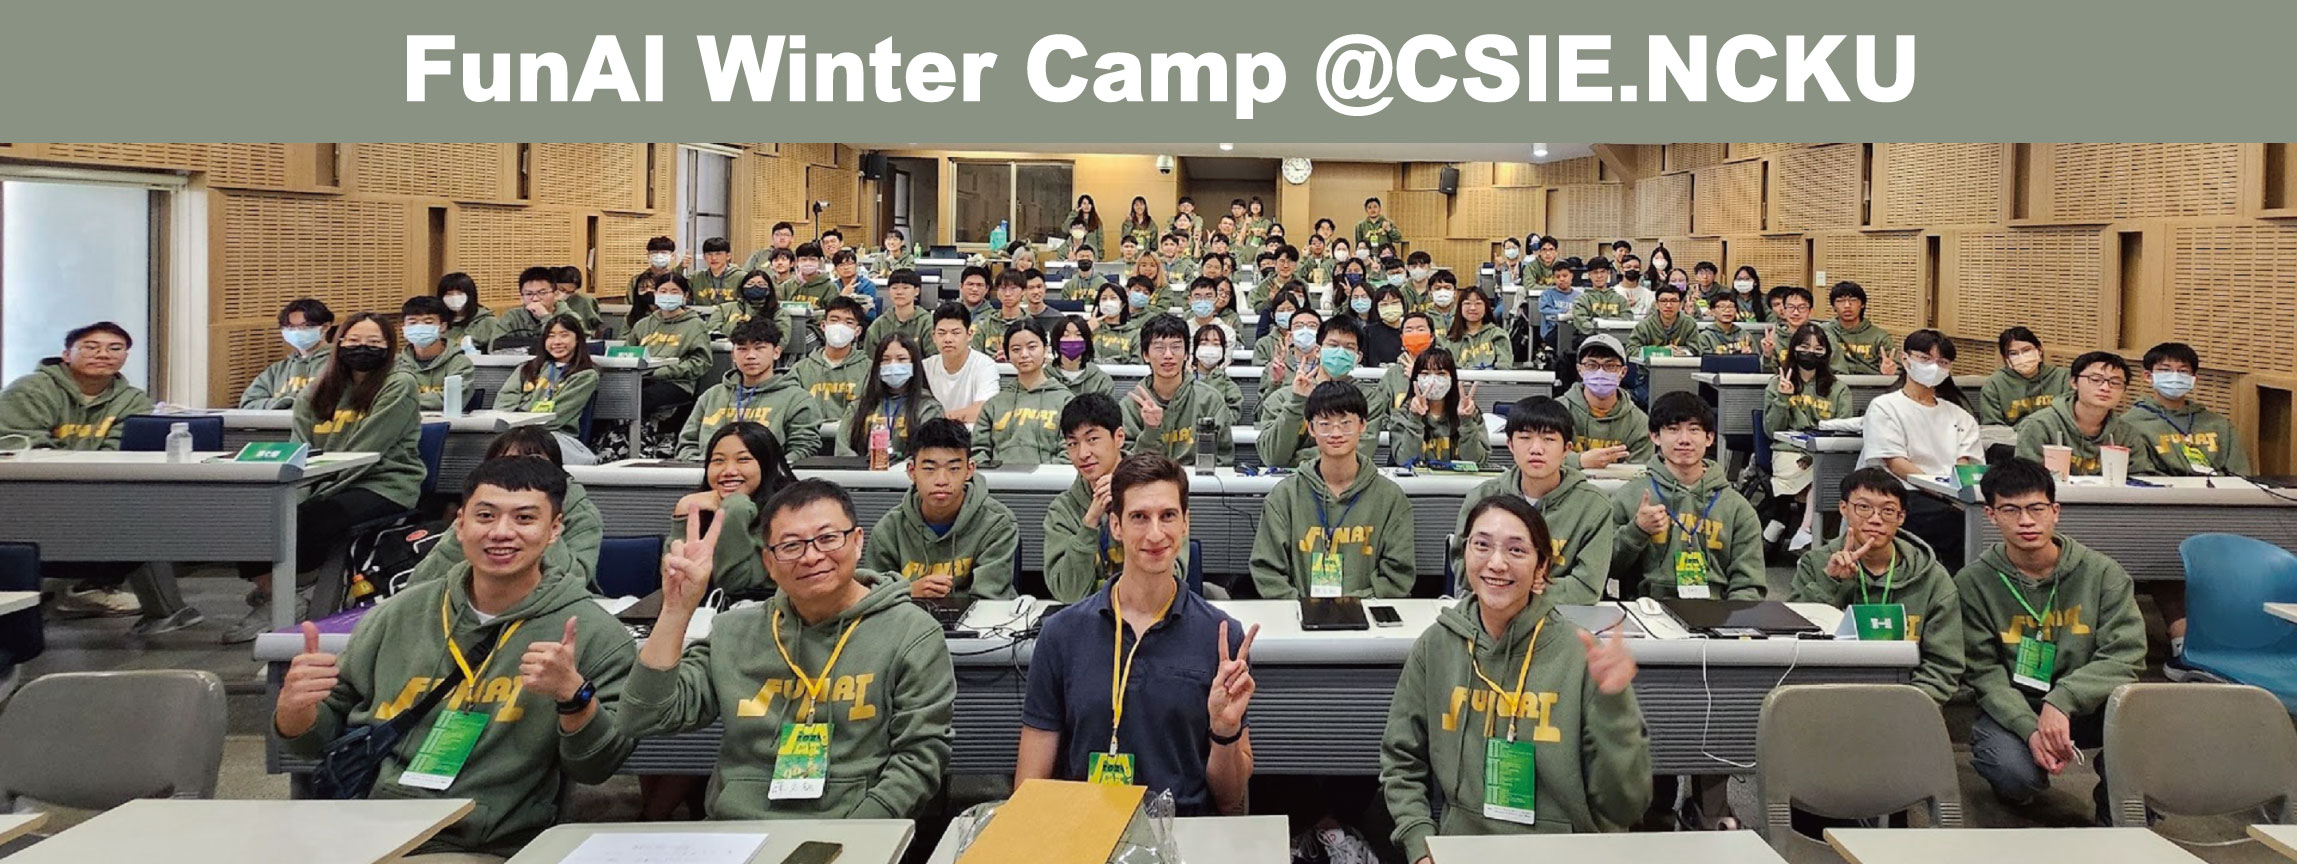 FunAI-Winter-Camp-@CSIE.NCKU